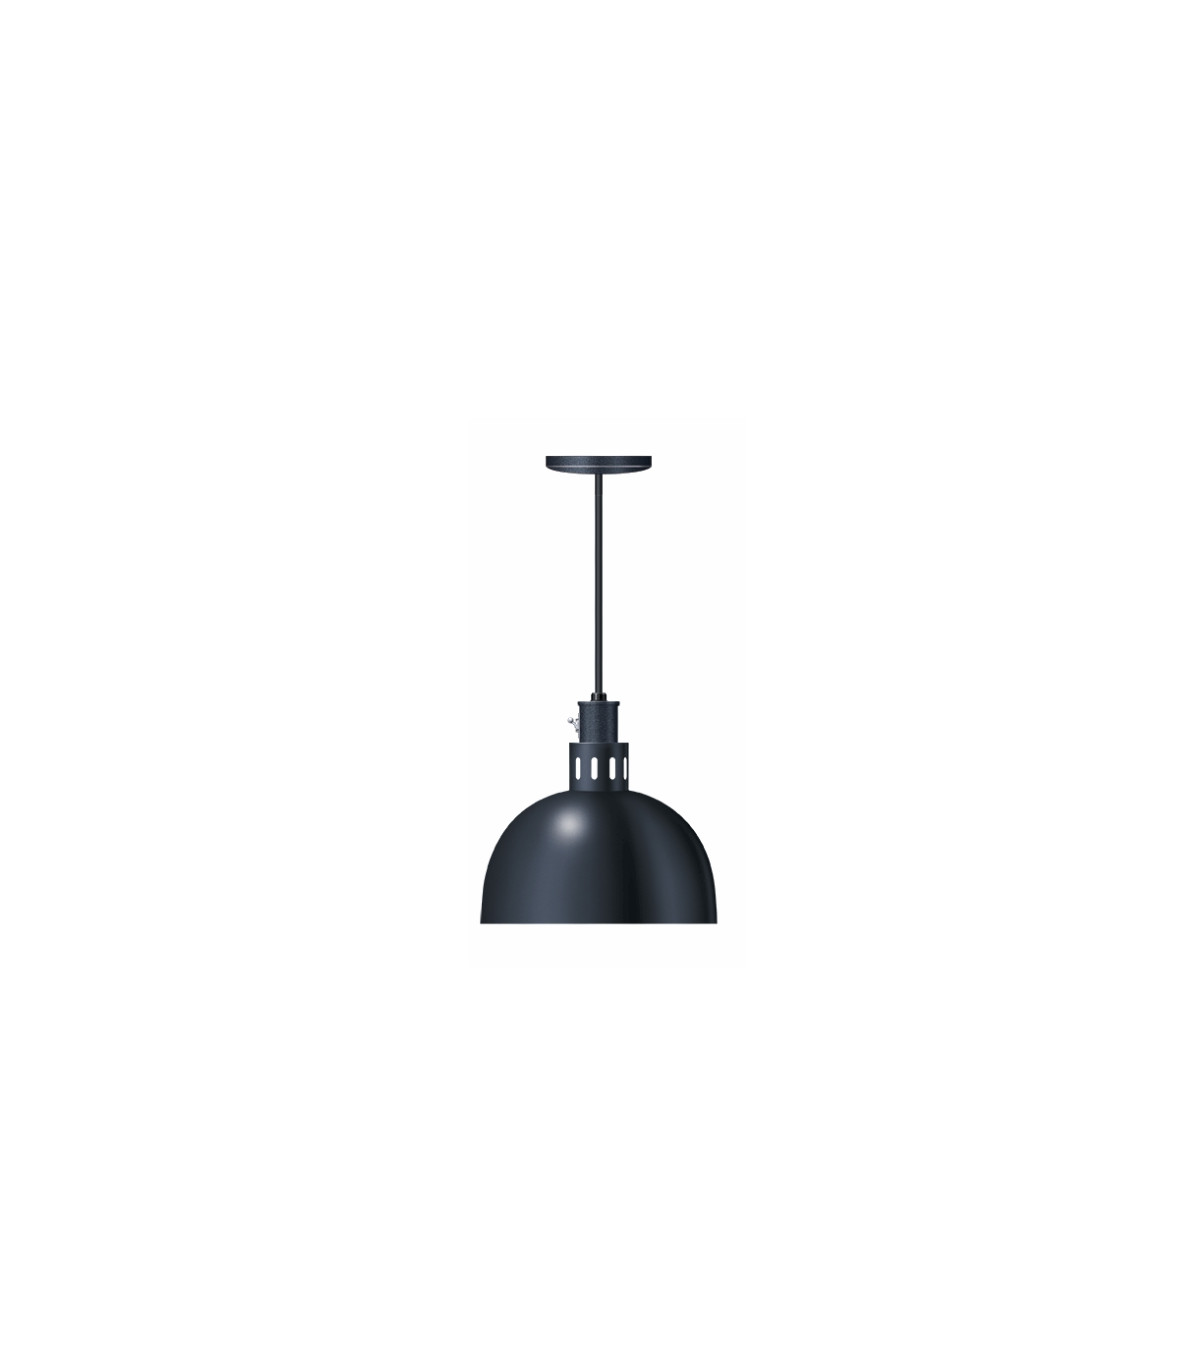 Lampe chauffante Réf. DL-750 déclinables HATCO